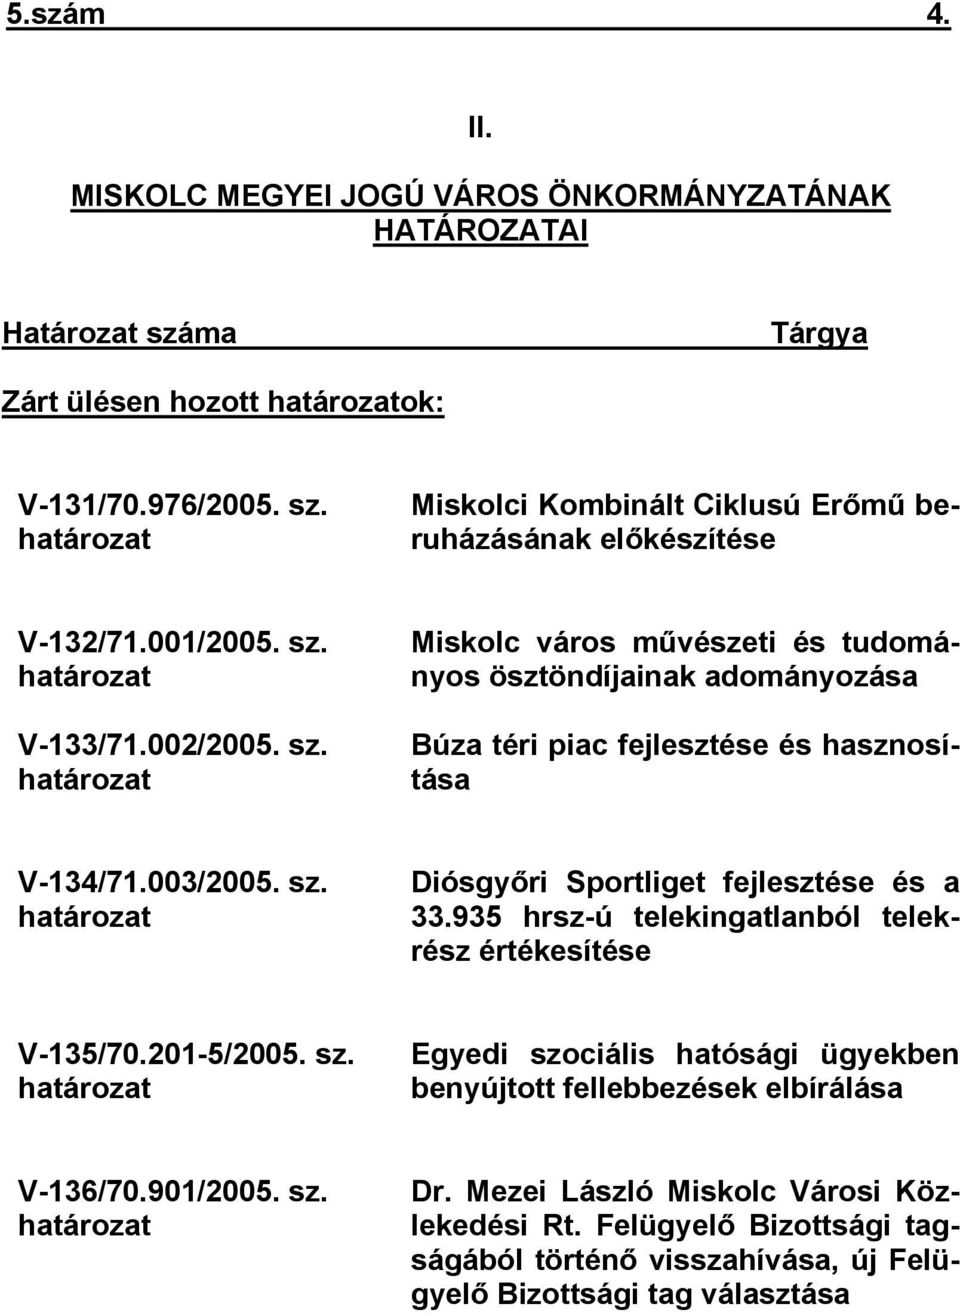 935 hrsz-ú telekingatlanból telekrész értékesítése V-135/70.201-5/2005. sz. határozat Egyedi szociális hatósági ügyekben benyújtott fellebbezések elbírálása V-136/70.901/2005. sz. határozat Dr.